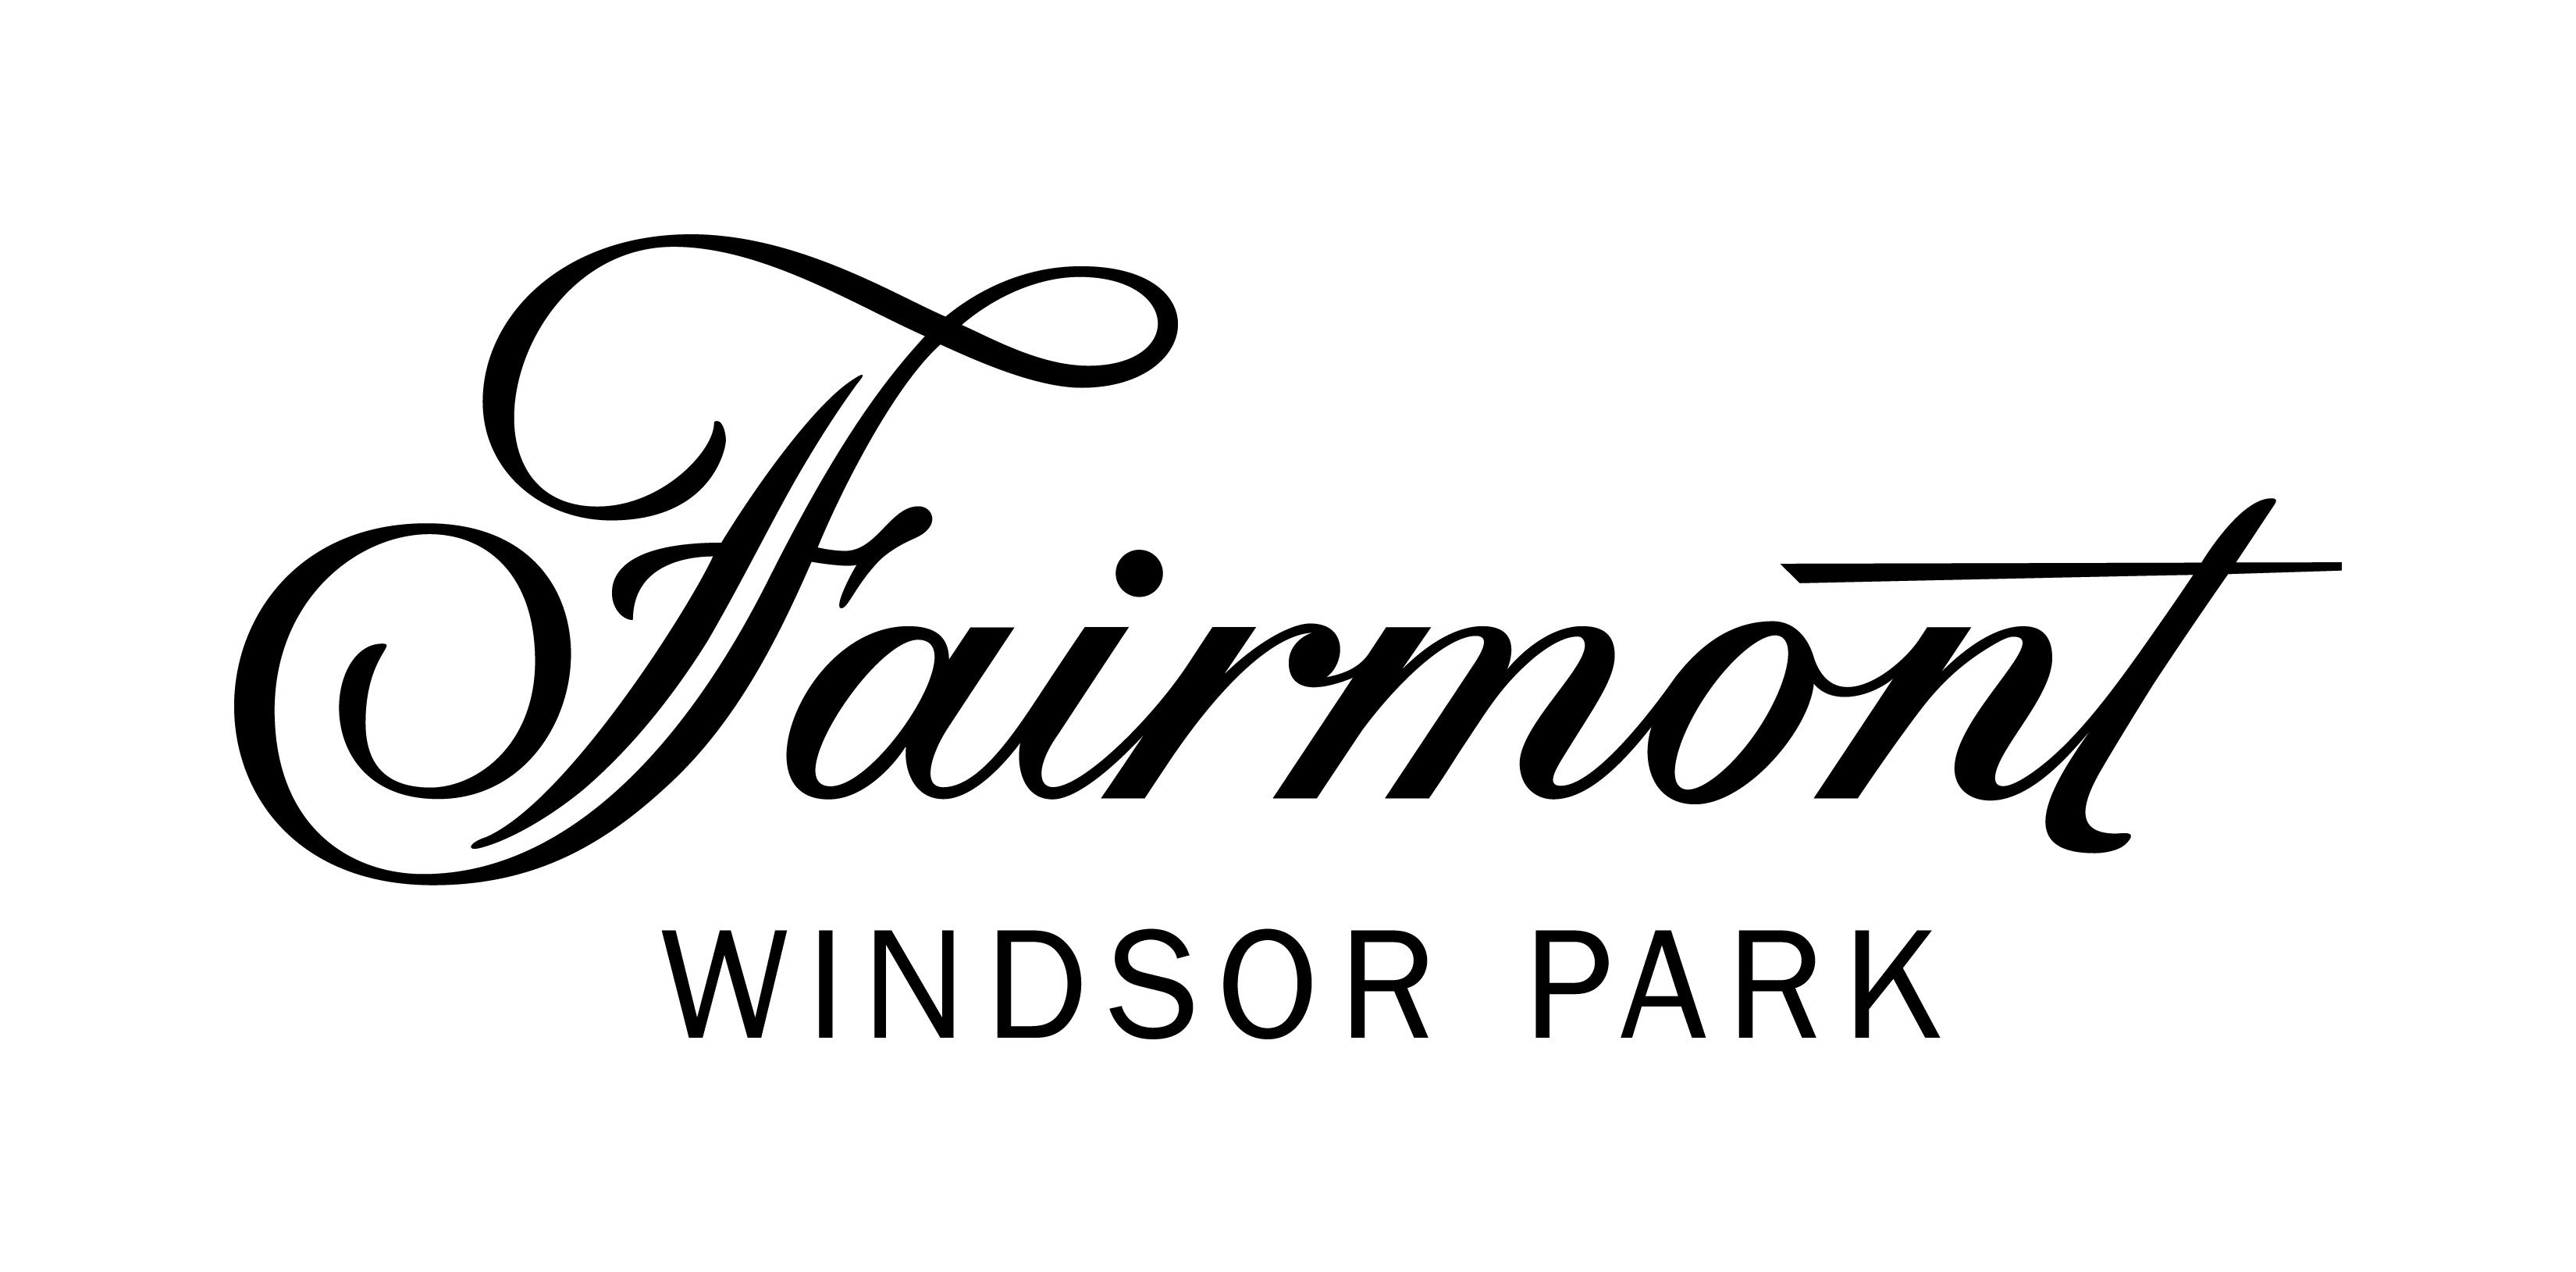 Fairmont Windsor Park